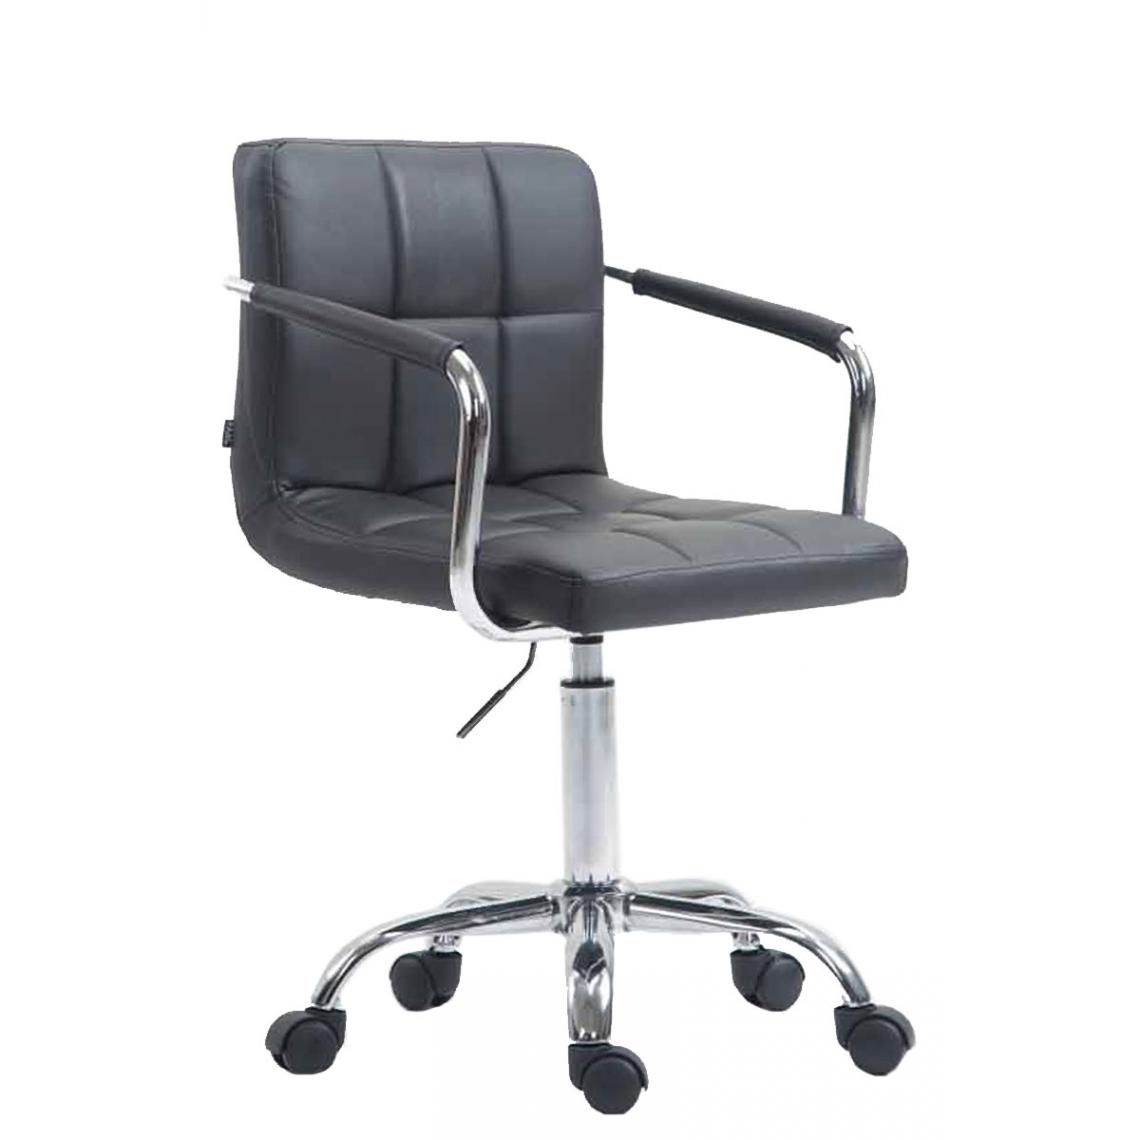 Icaverne - Superbe Chaise de bureau edition Windhoek couleur gris - Chaises